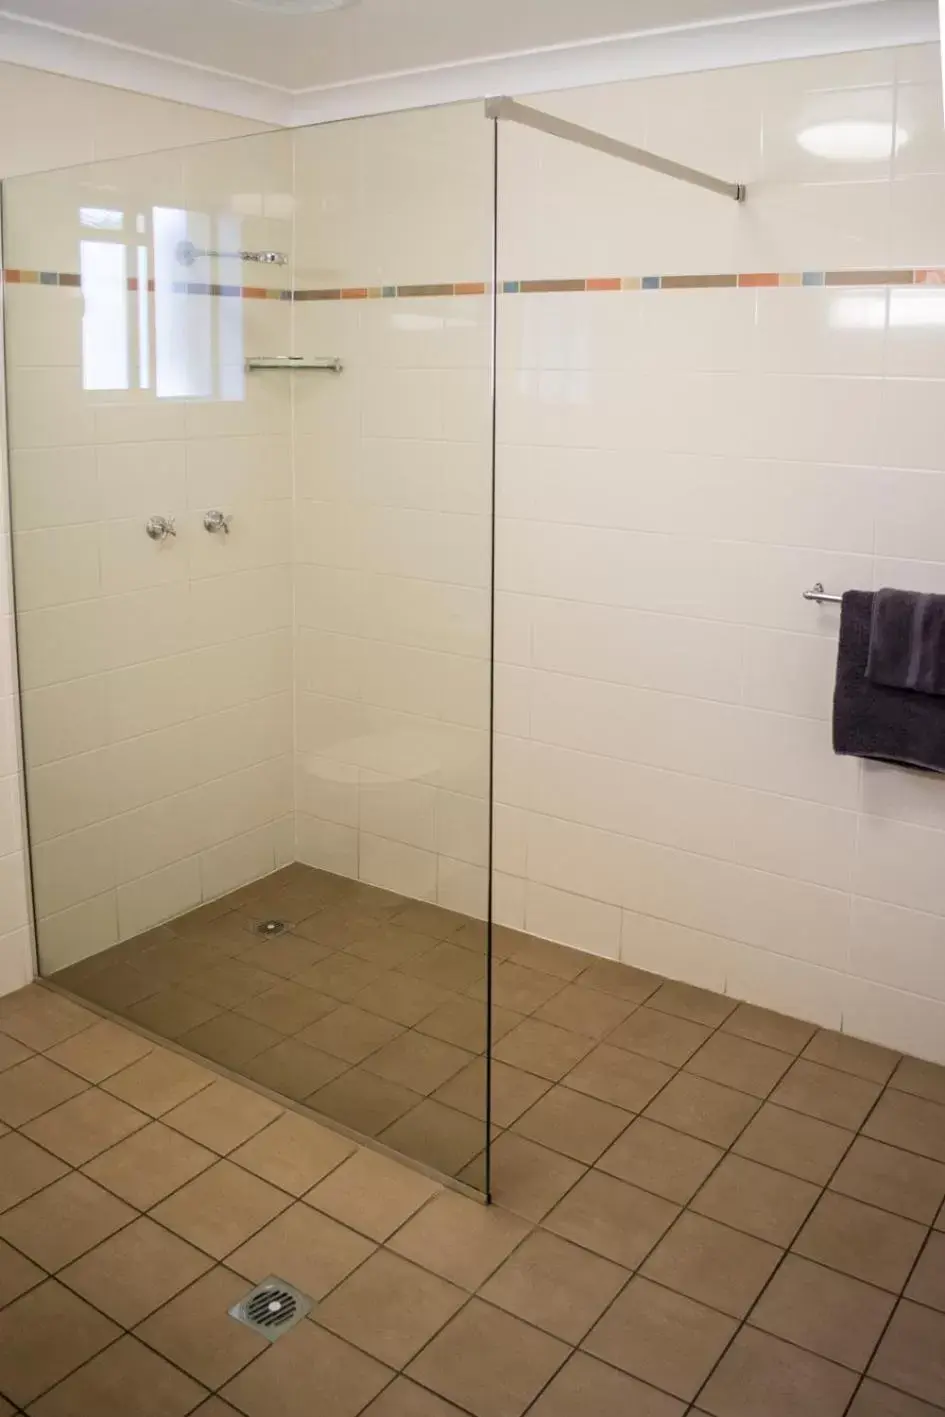 Shower, Bathroom in Highway Inn Motel